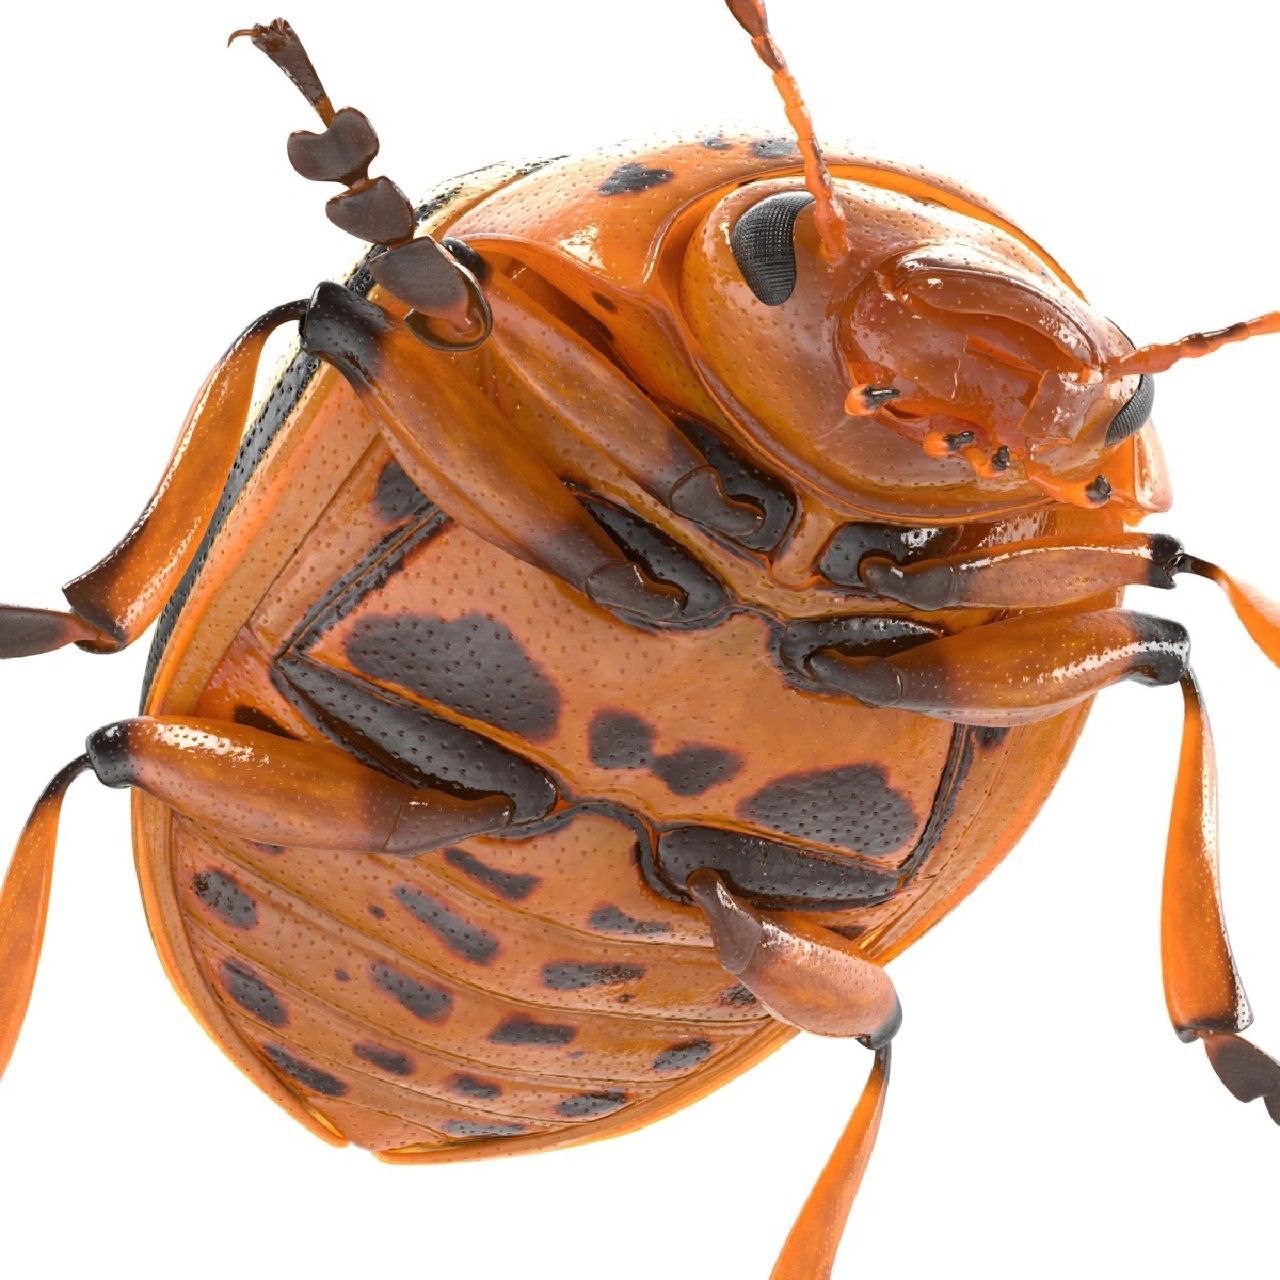 甲虫的形态——腹部 典型的甲虫腹部具5个可见腹节,有时能达8个